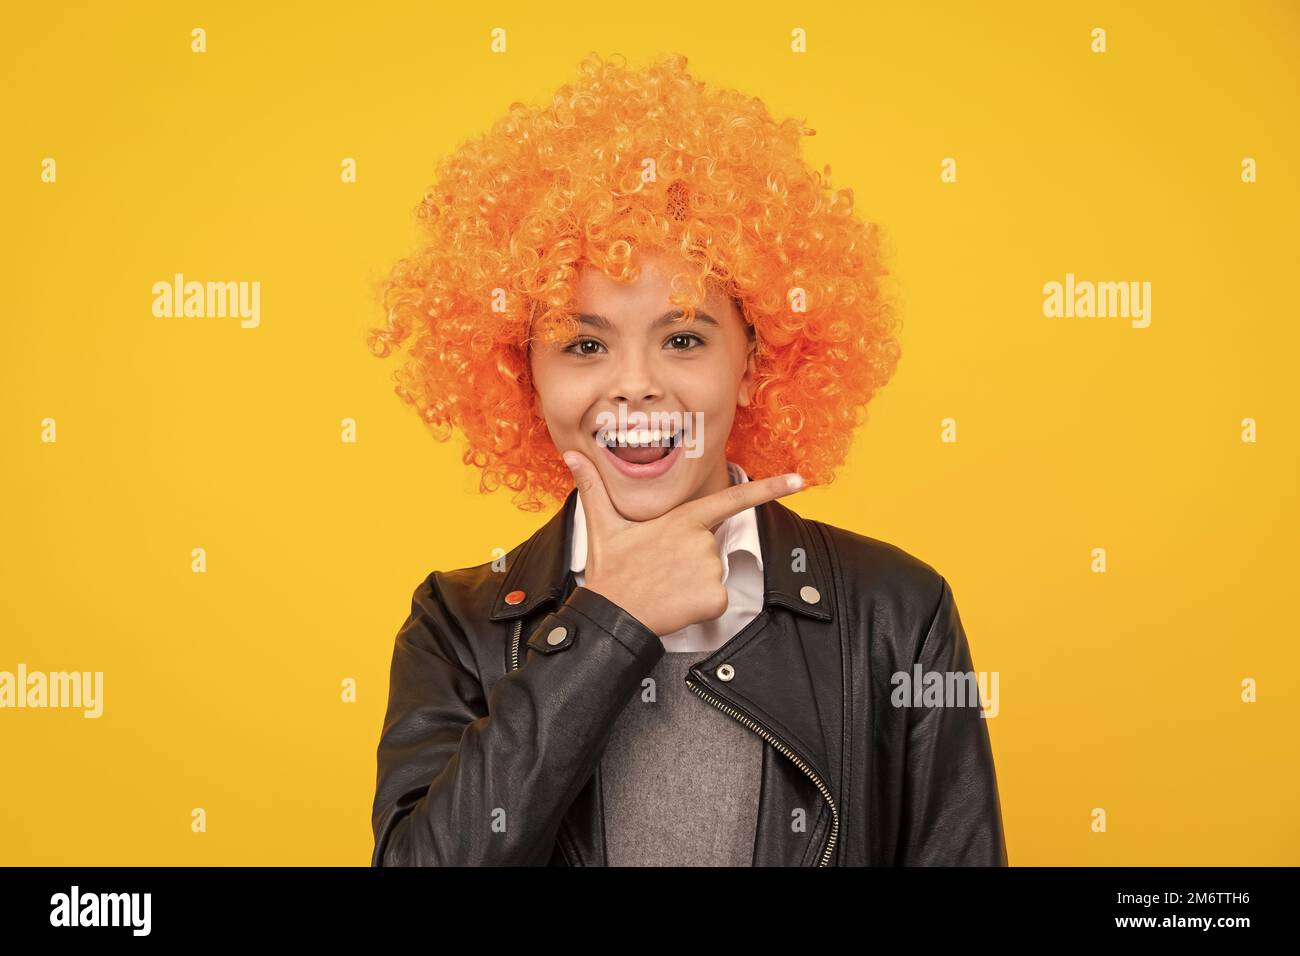 Belle adolescente dans perruque isolée sur jaune. Perruque clown amusante. Visage de fille heureux, émotions positives et souriantes. Banque D'Images